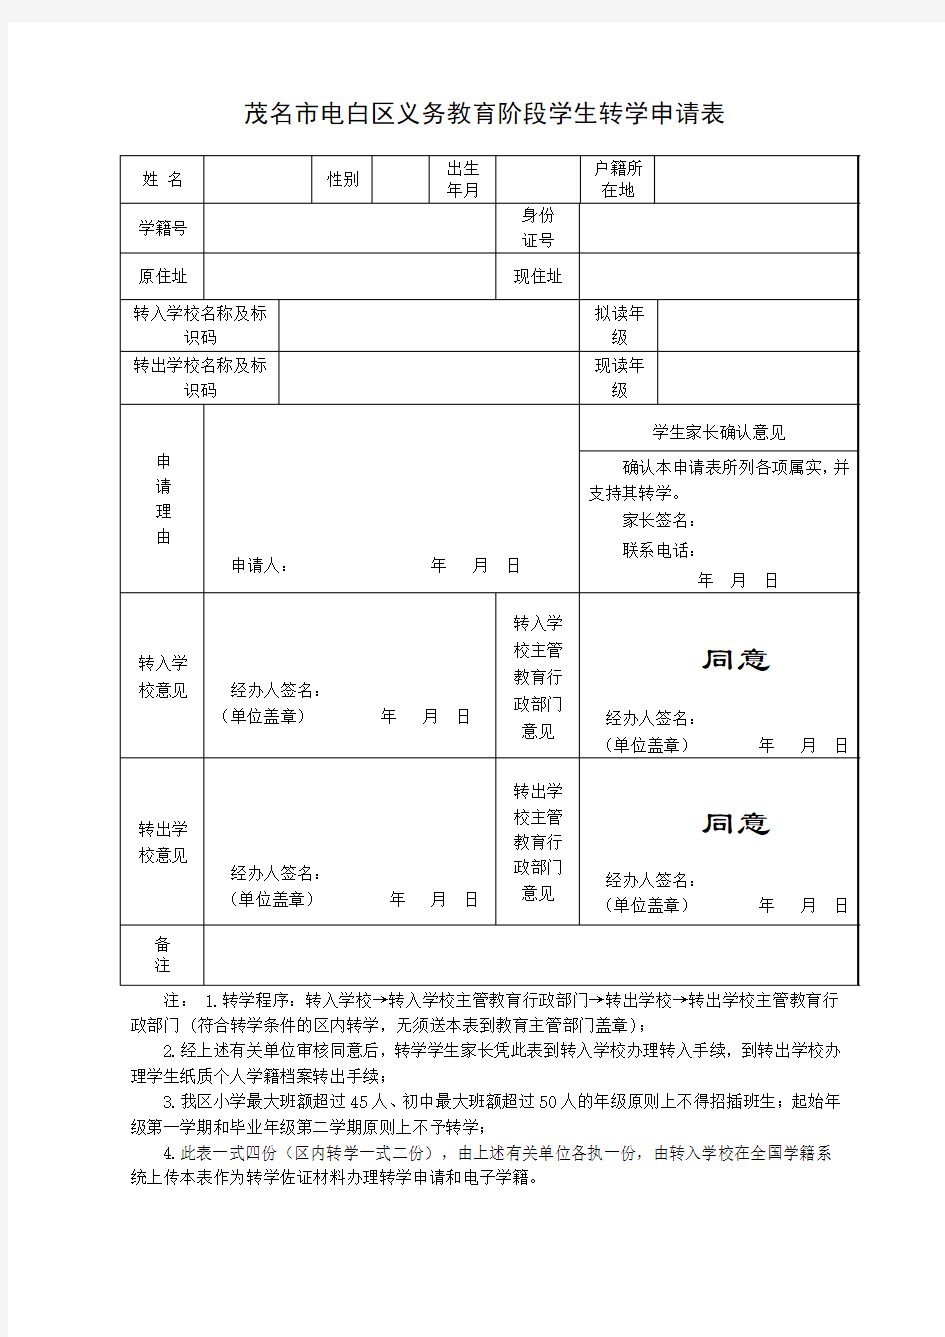 广东省义务教育阶段学生转学申请表(2014年秋季起使用)